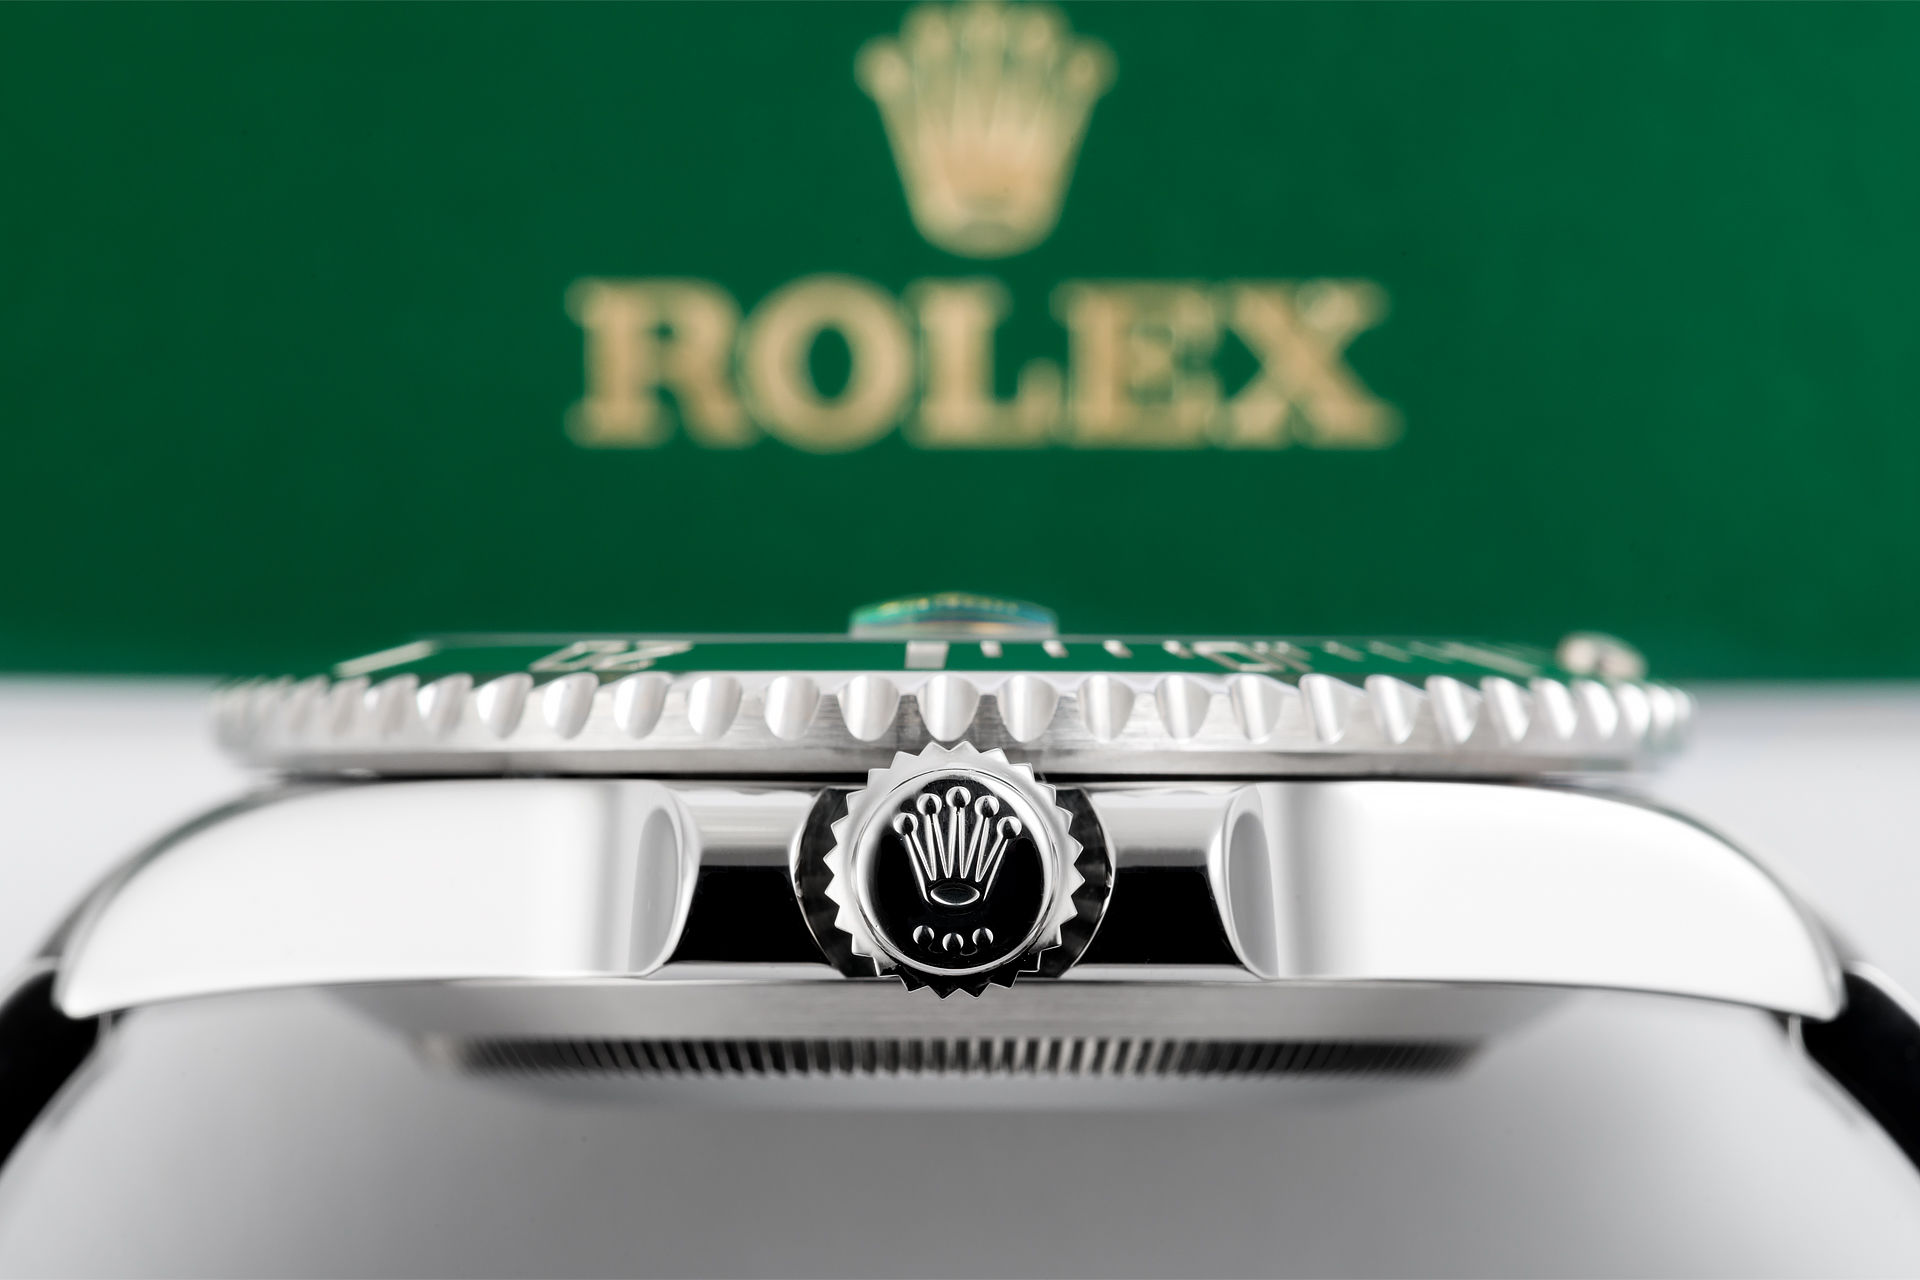 ref 116610LV | 'Anniversary Model' Rolex Warranty | Rolex Submariner Date